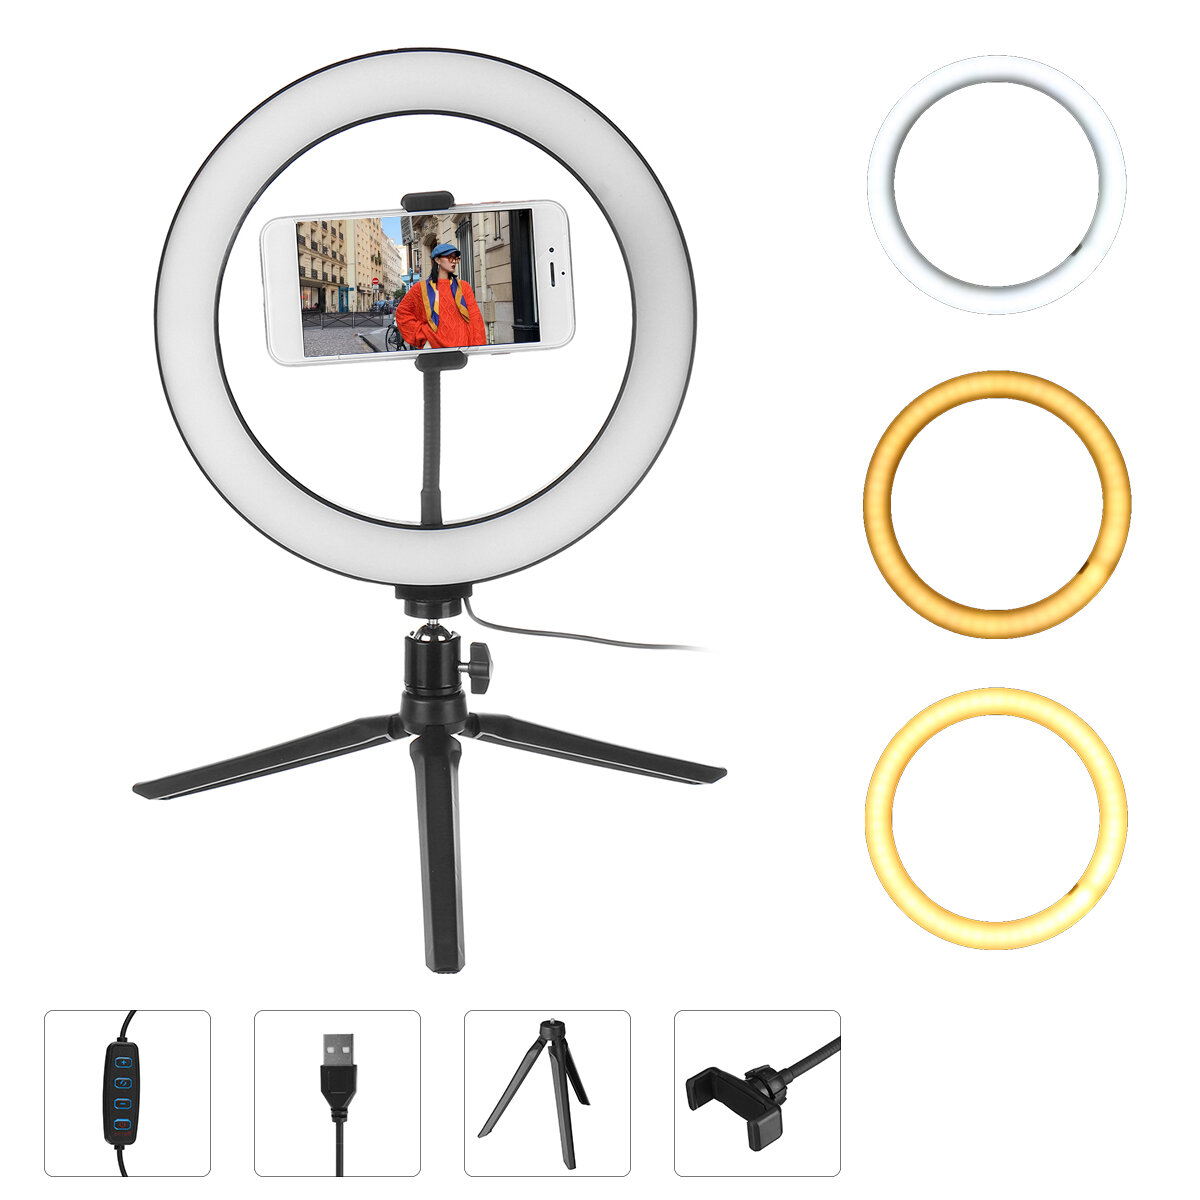 

3 Light Modes Dimmable 10 inch LED Ring Fill Light LED Ring Full Light Desktop Tripod Stand Live Selfie Holder with USB